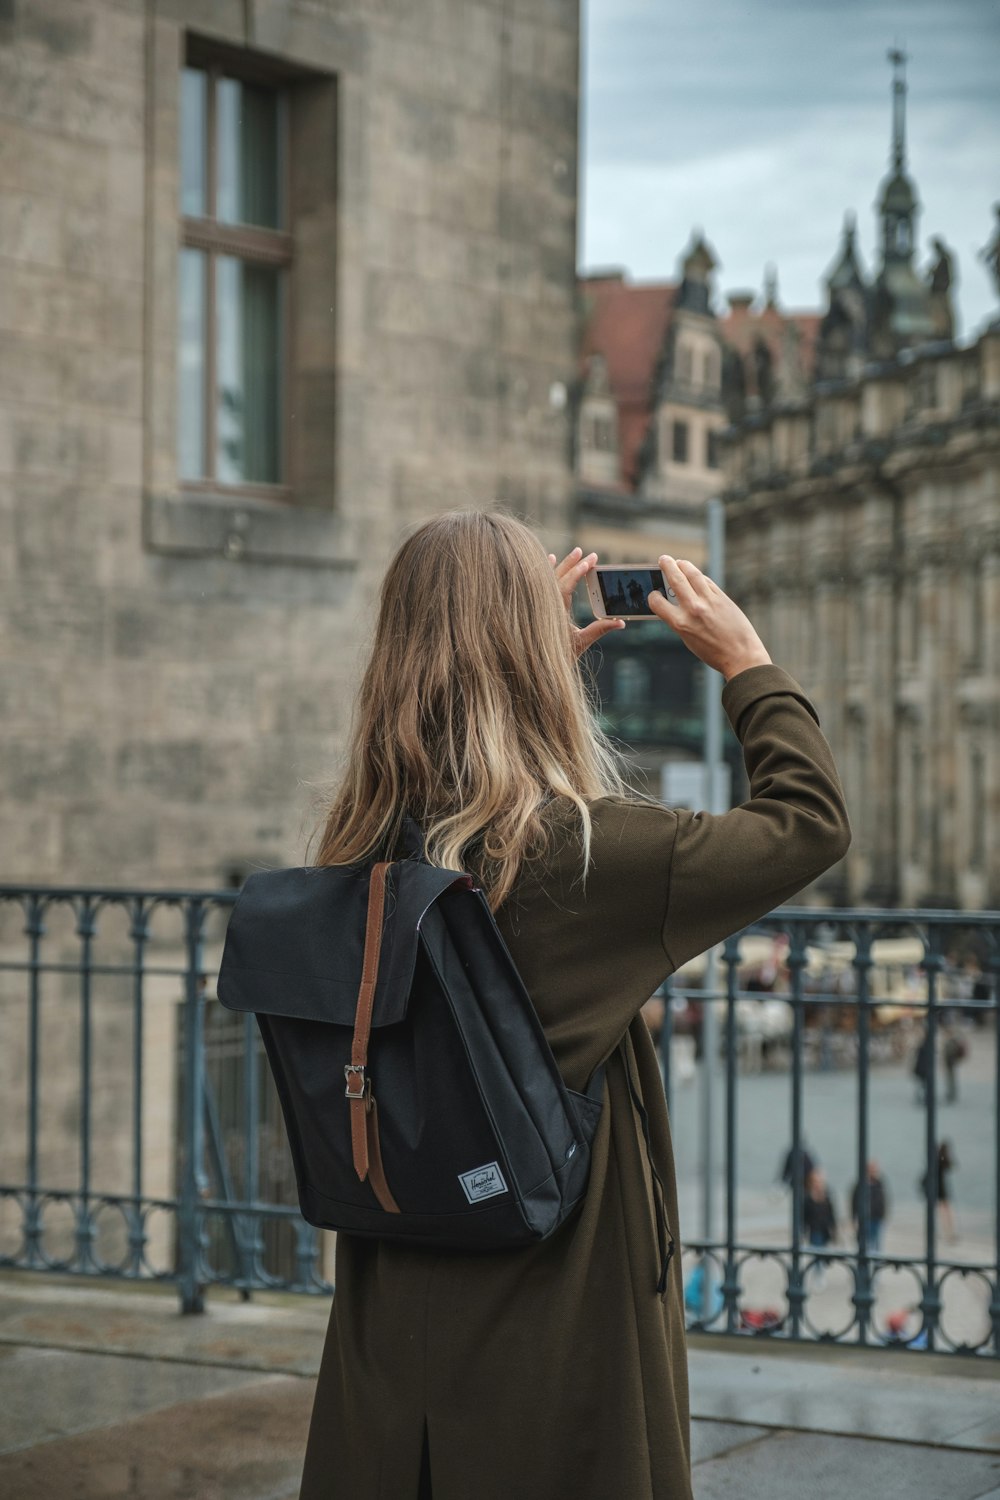 Femme en veste grise prenant une photo à l’aide d’un appareil photo reflex numérique noir